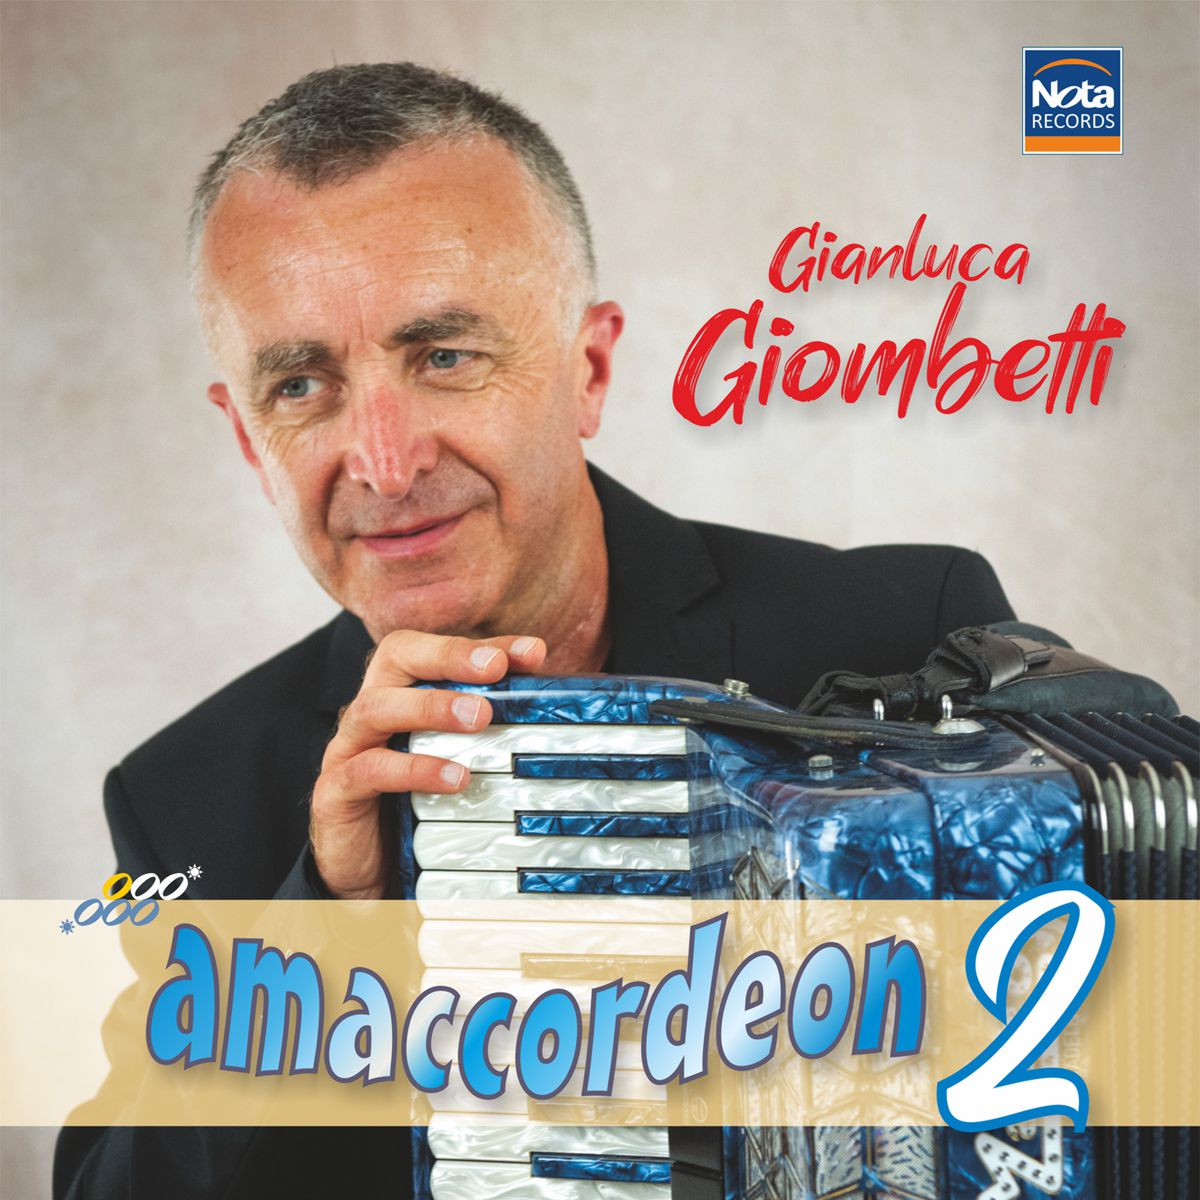 AMACCORDEON 2 - Gianluca Giombetti